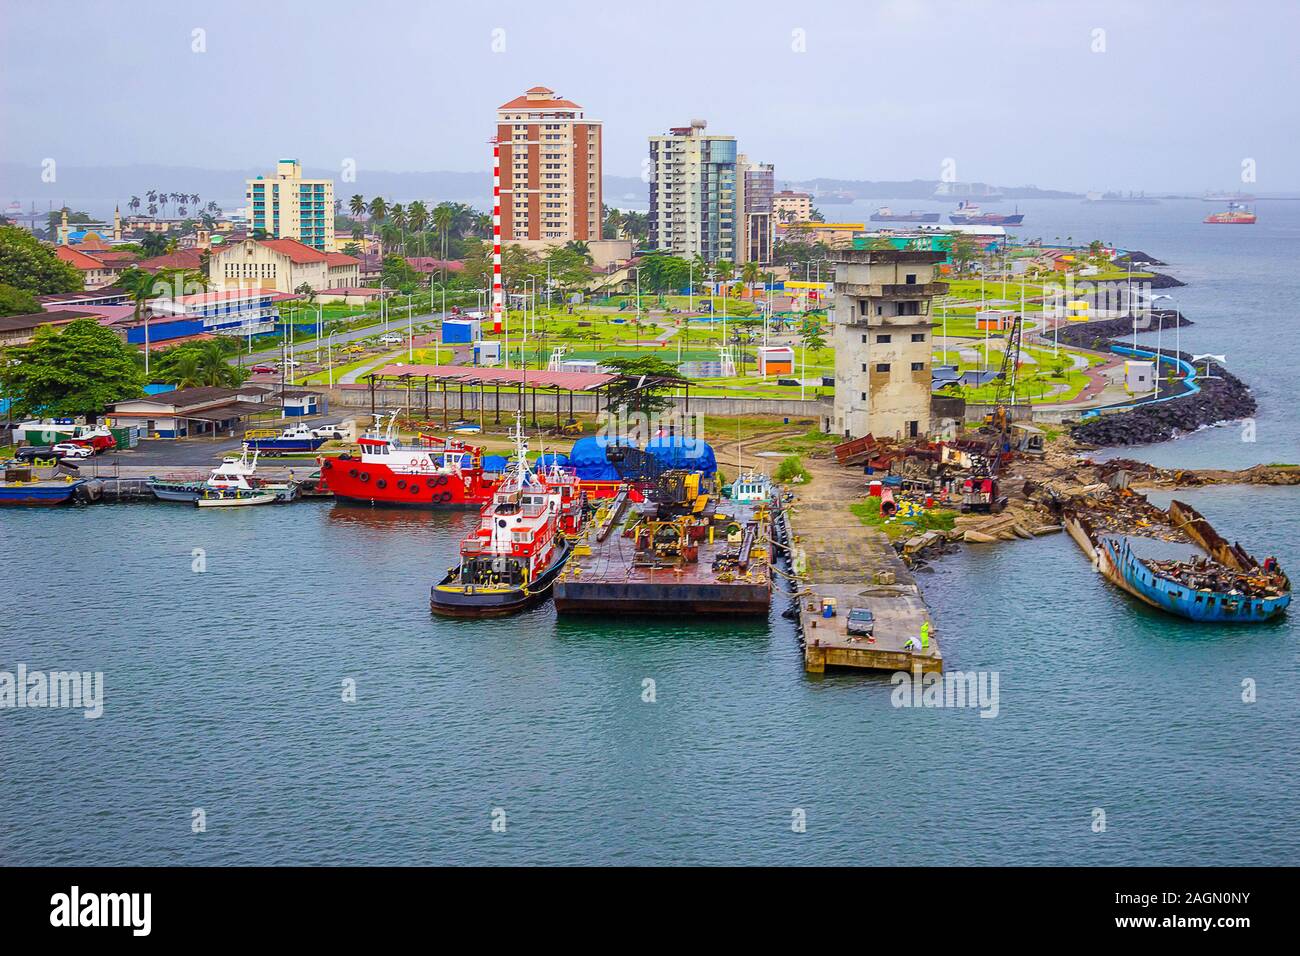 Colon is a sea port on the Caribbean Sea coast of Panama. Stock Photo